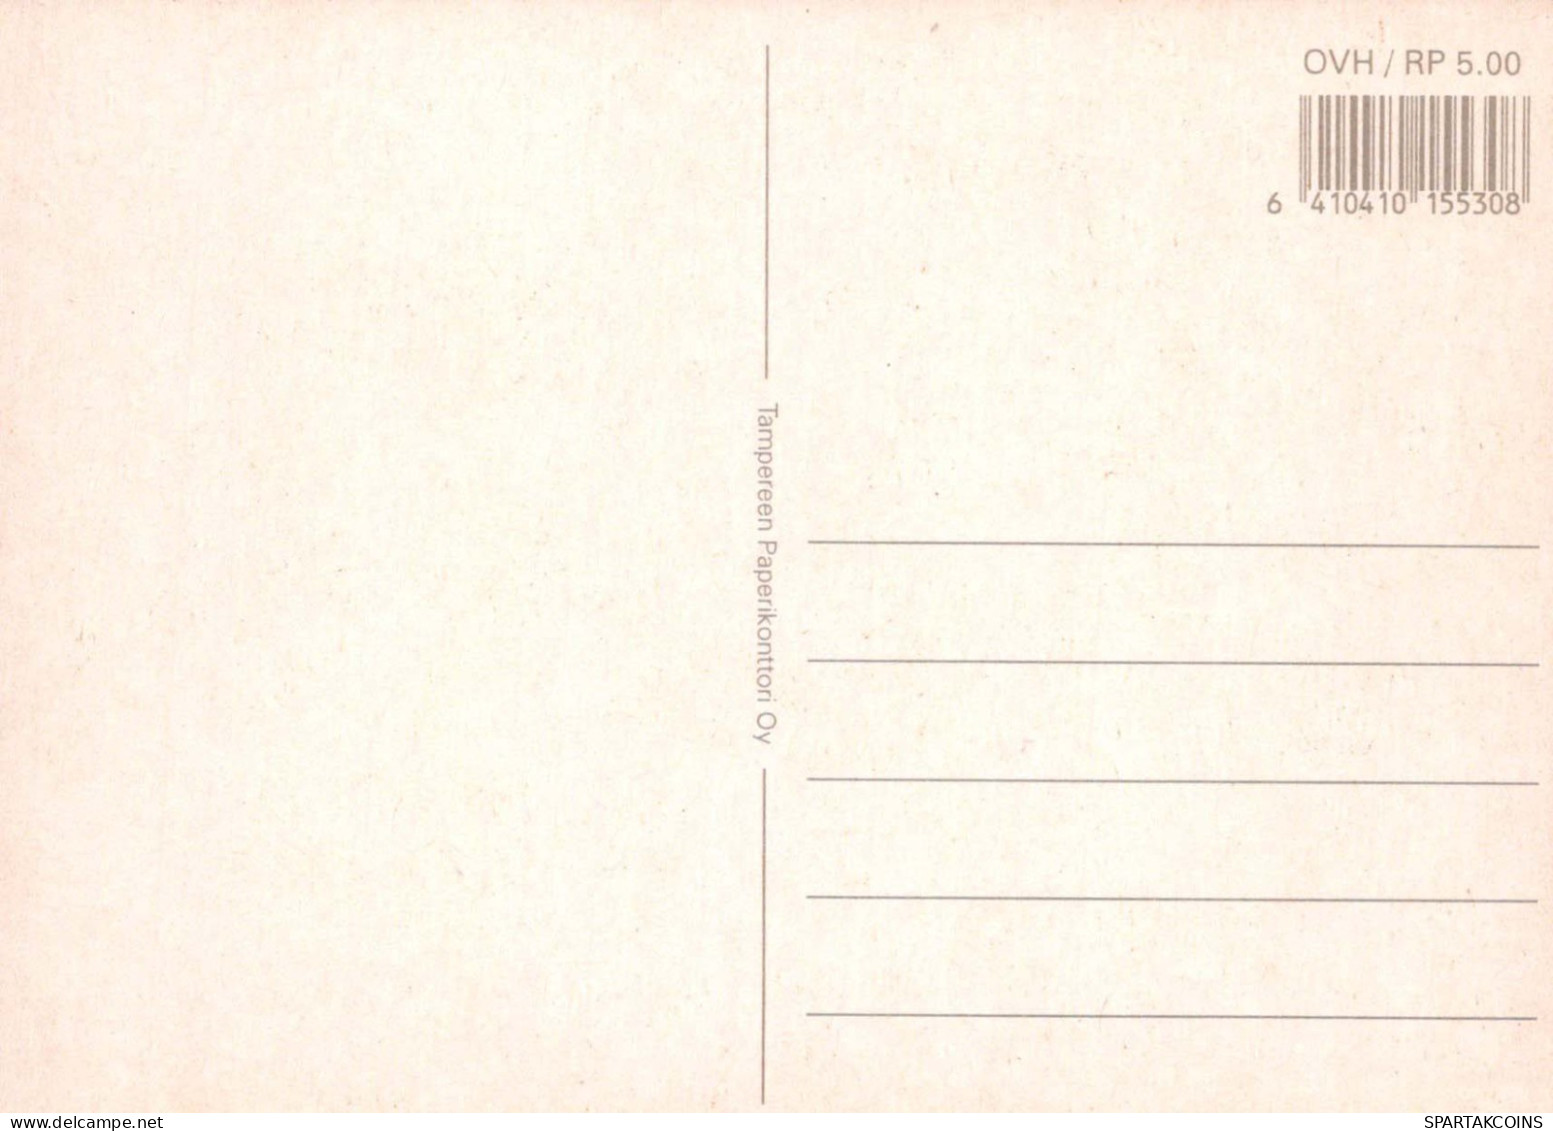 ALLES GUTE ZUM GEBURTSTAG 10 Jährige JUNGE KINDER Vintage Postal CPSM #PBT976.DE - Compleanni